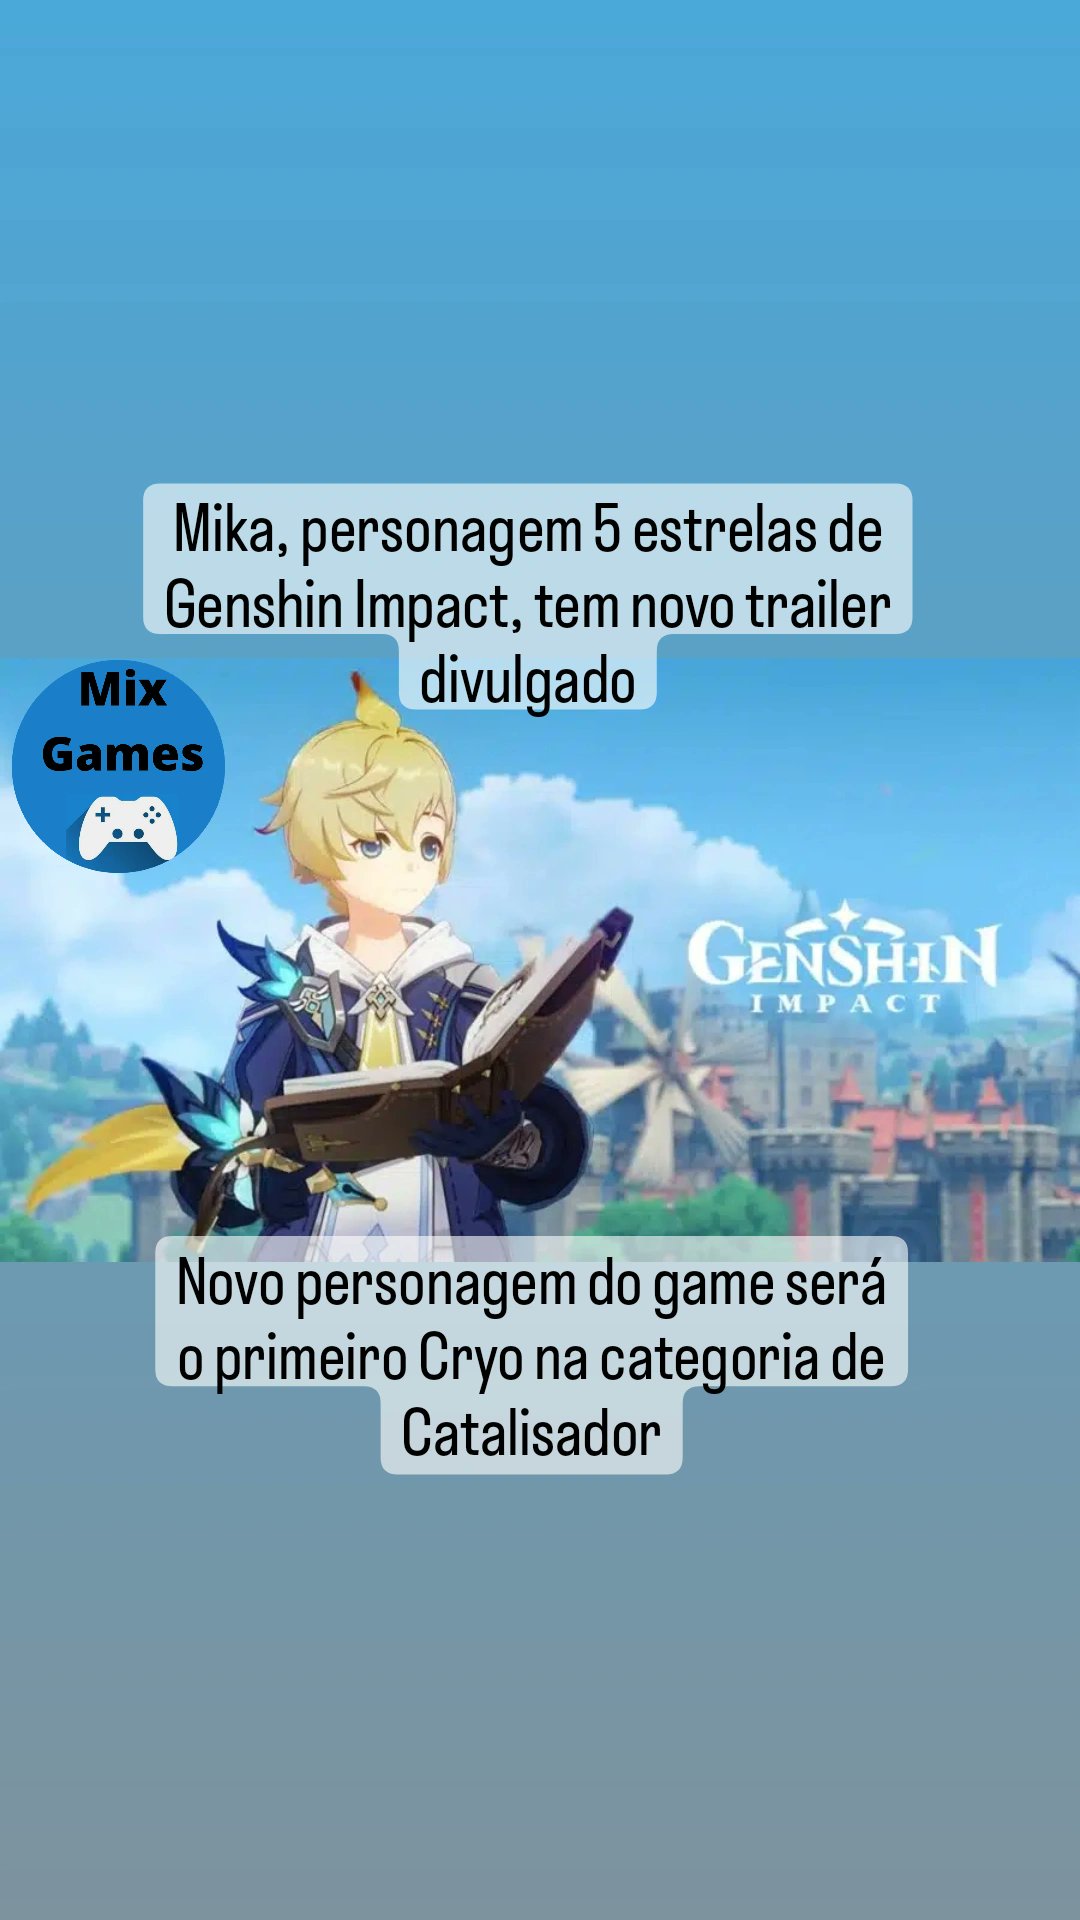 mix games on X: Mika, personagem 5 estrelas de Genshin Impact